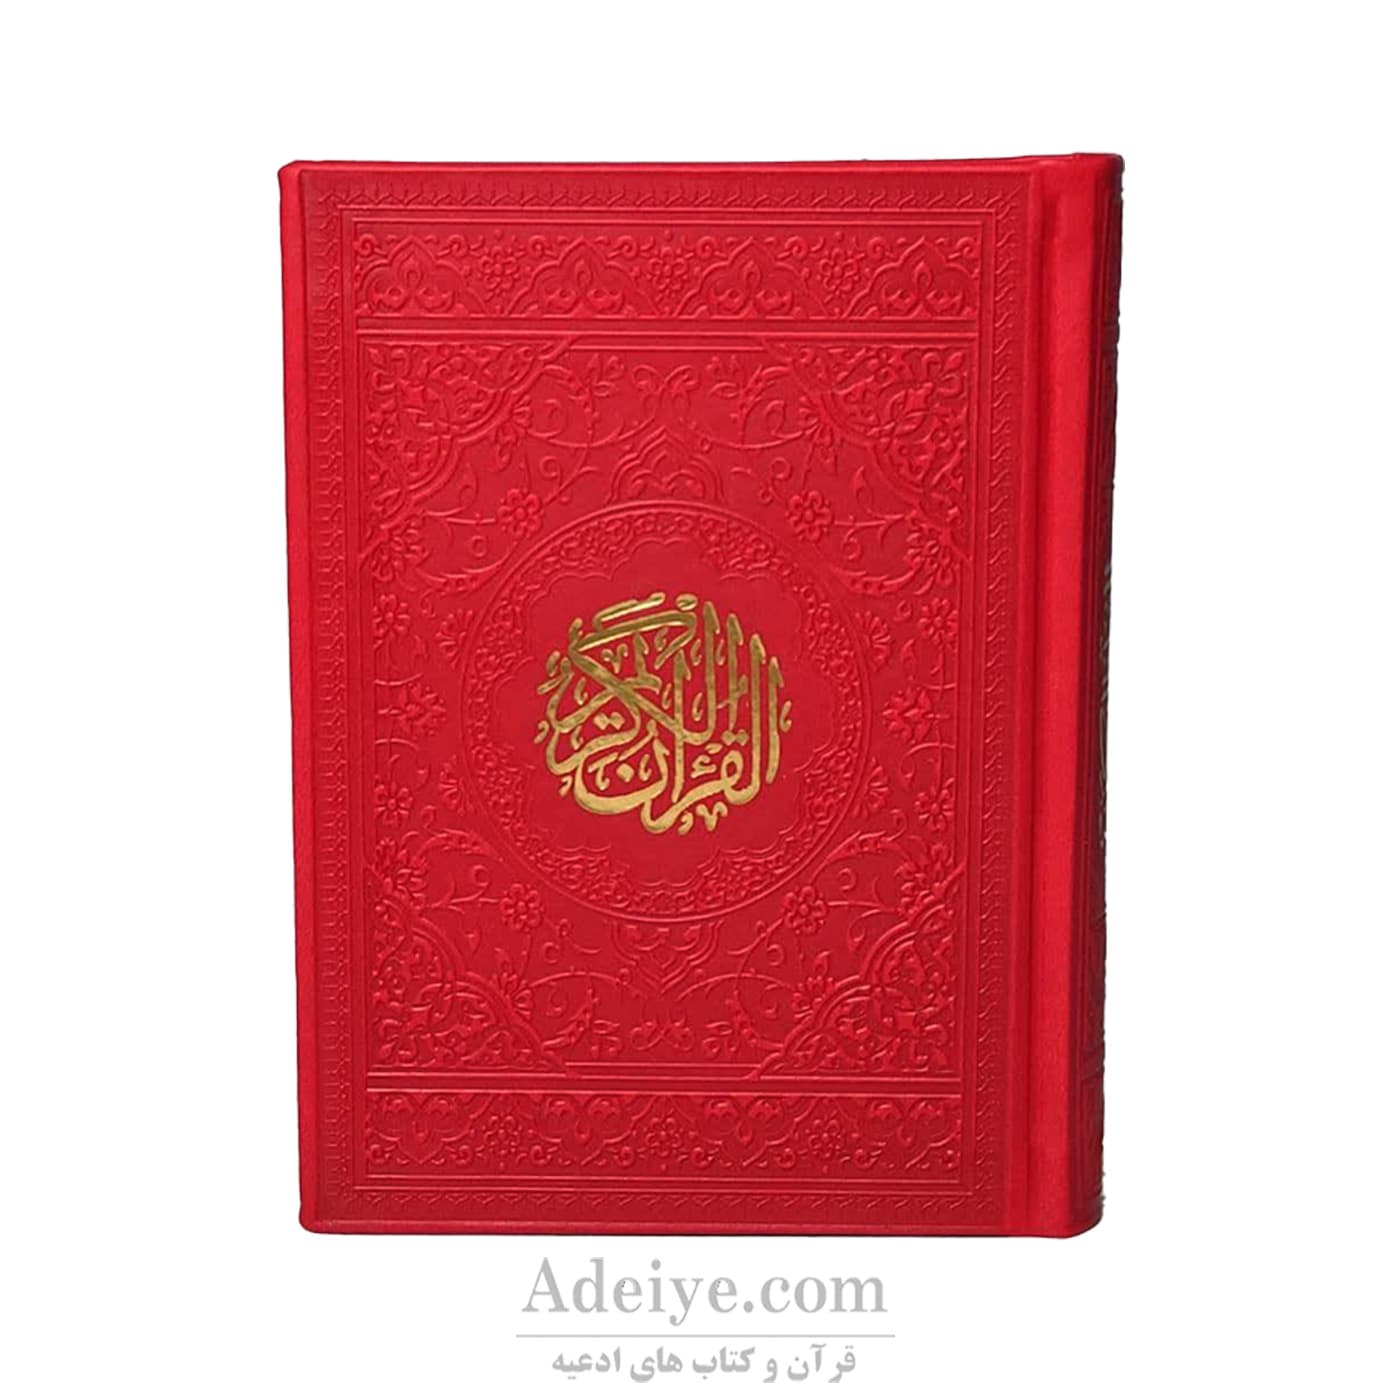 قرآن عثمان طه نیم جیبی، ترمو رنگی، بهمراه ترجمه رنگ قرمز